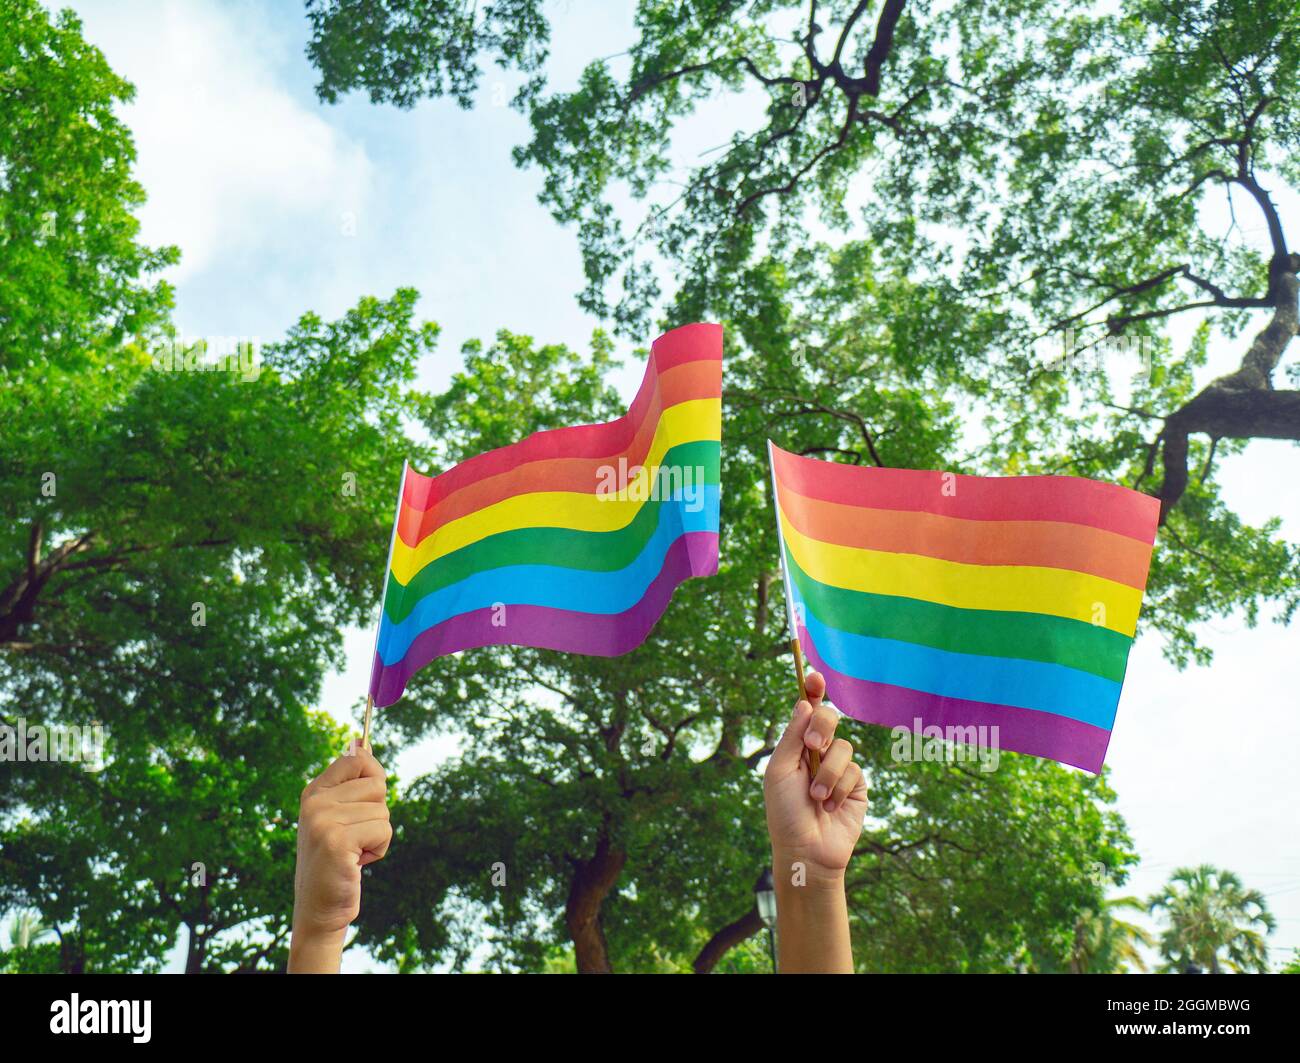 Zwei Hände halten kleine Regenbogenfahnen zur Unterstützung der LGBTQ-Bewegung, im Hintergrund grüne Bäume. Stockfoto